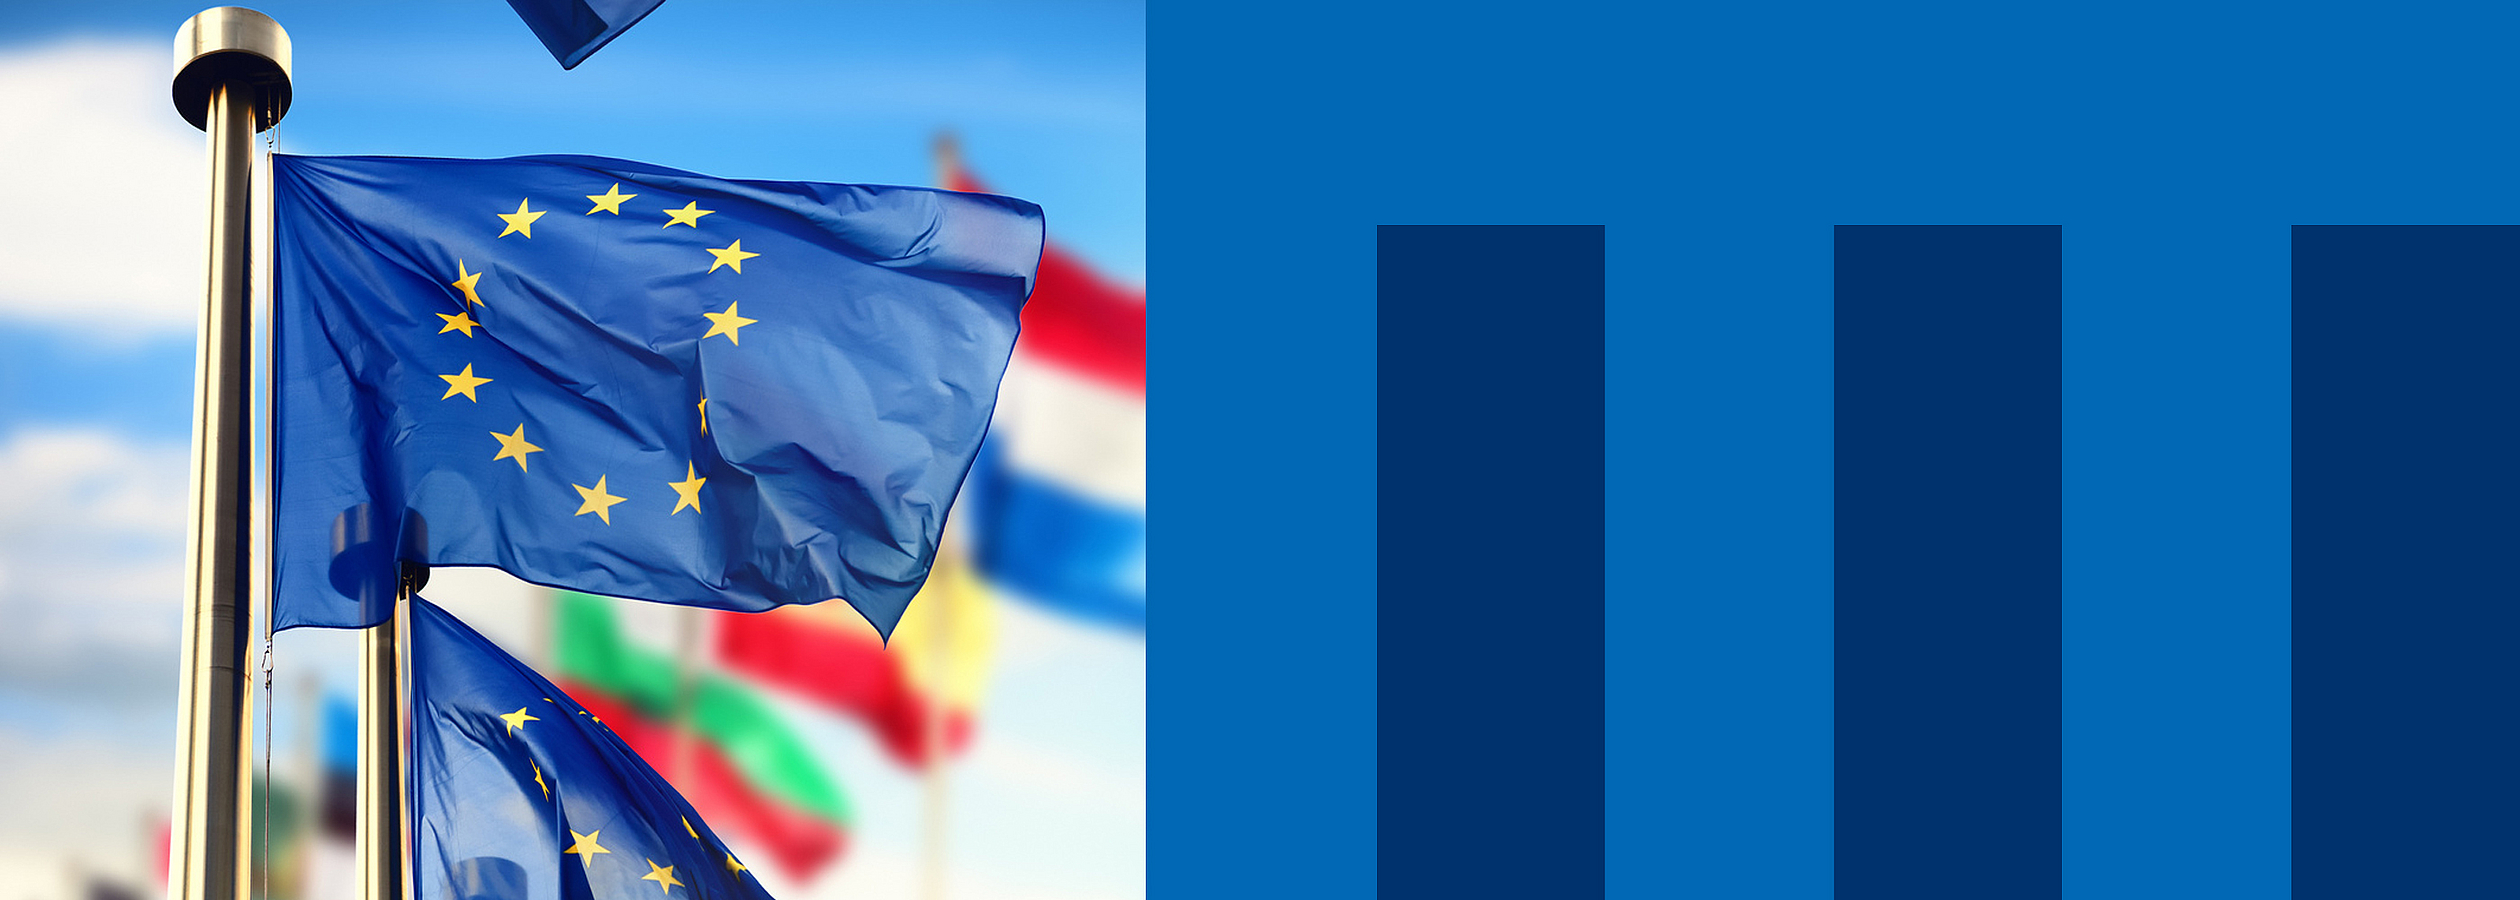 Eine Europaflagge weht an einem Fahnenmast, im Hintergrund sind Flaggen verschiedener Länder zu sehen